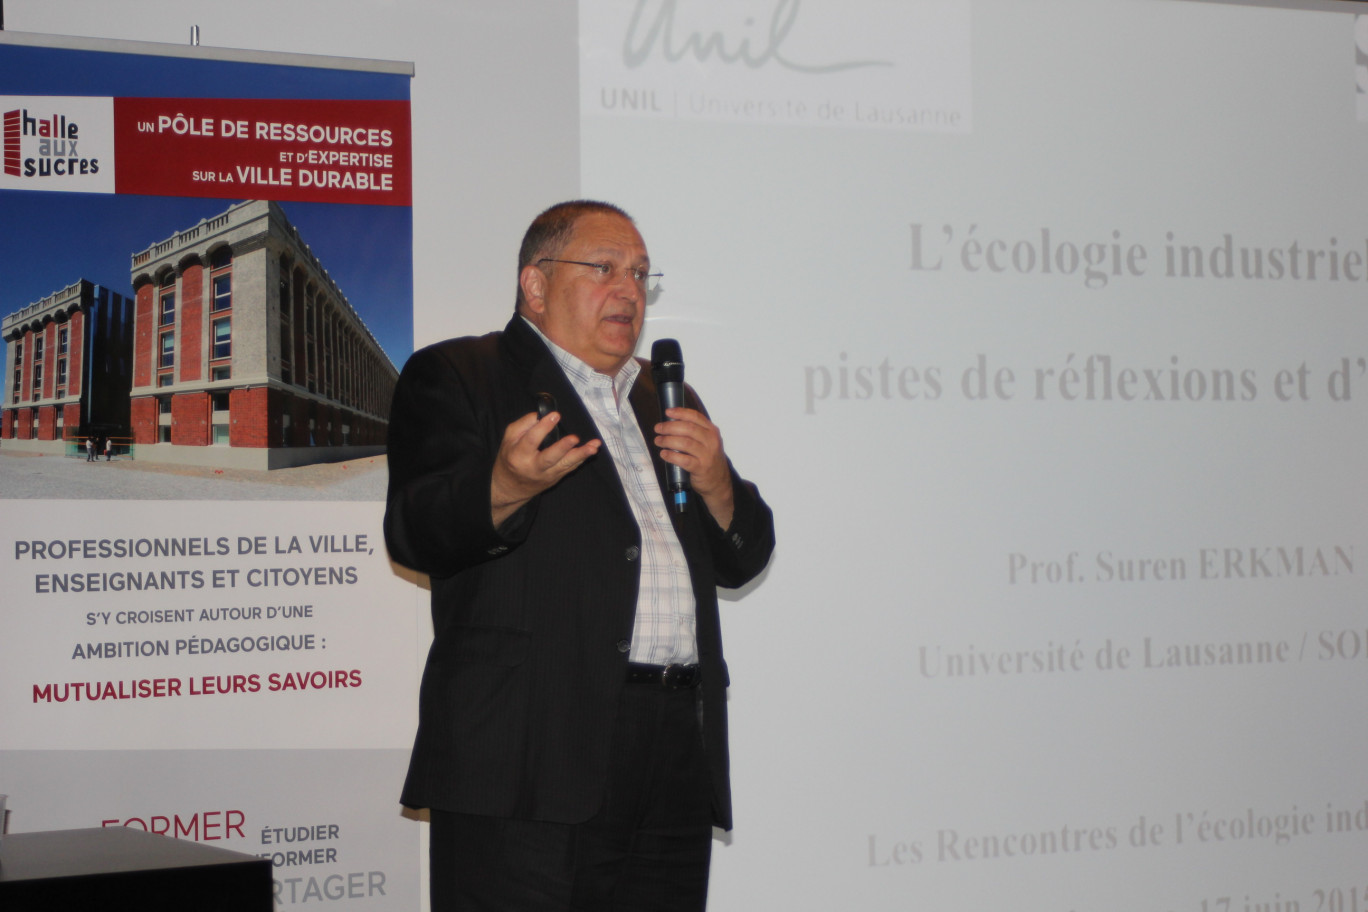 Suren Erkman, professeur à l'université de Lausanne et spécialiste international des questions d'écologie industrielle